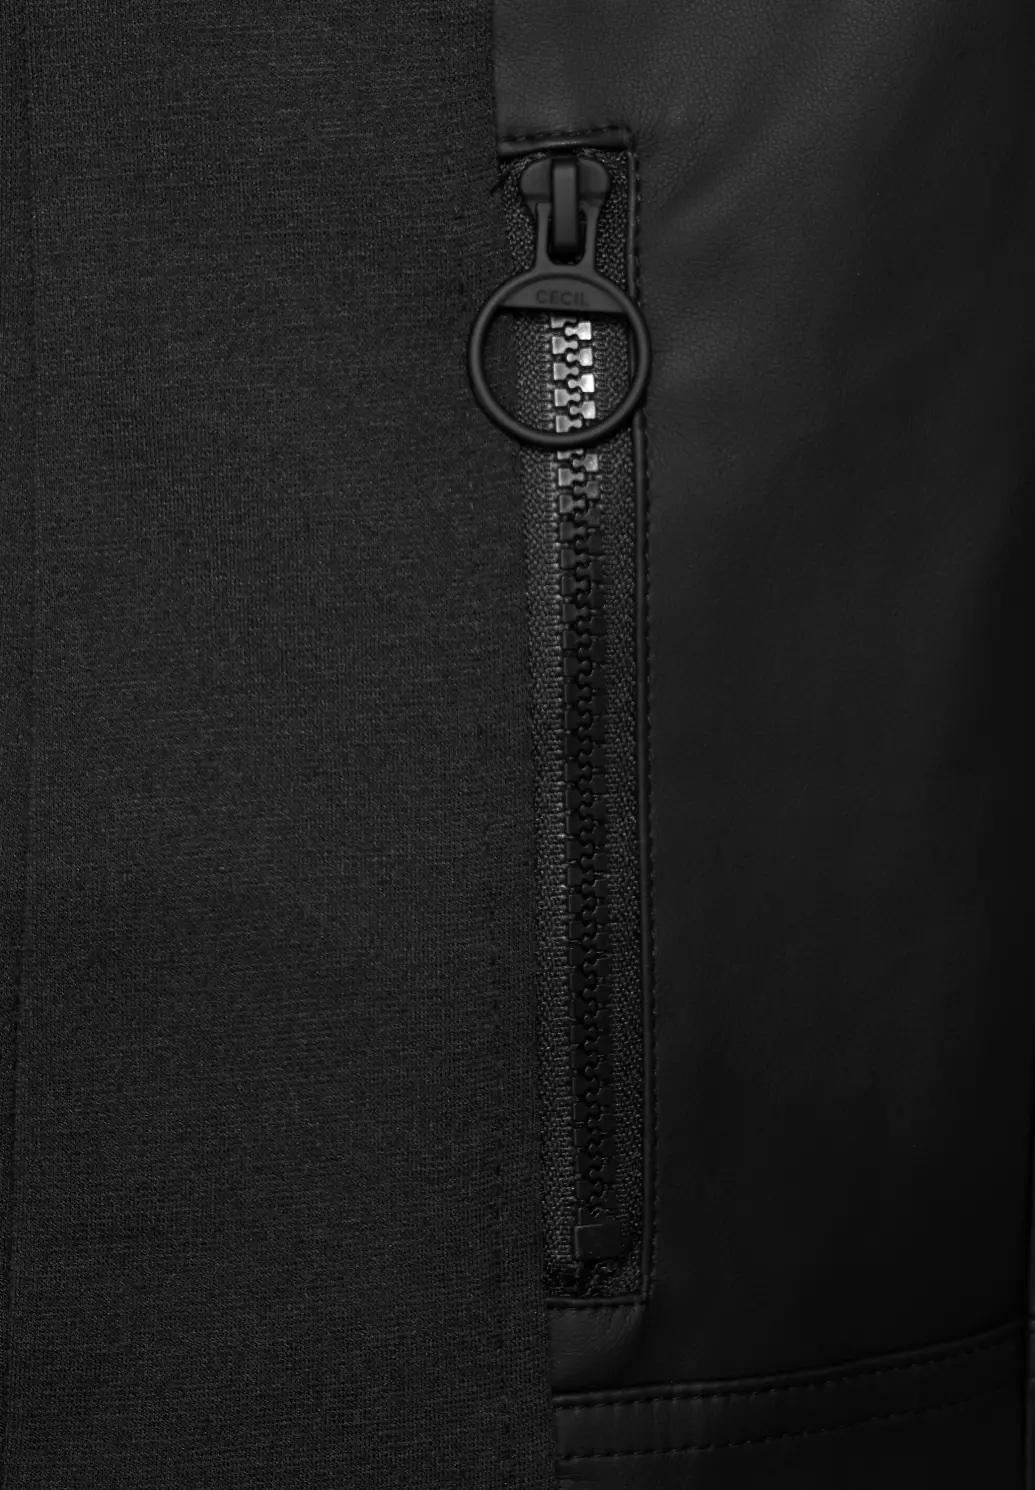 CECIL medzisezónna bunda v koženom vzhľade, čierna